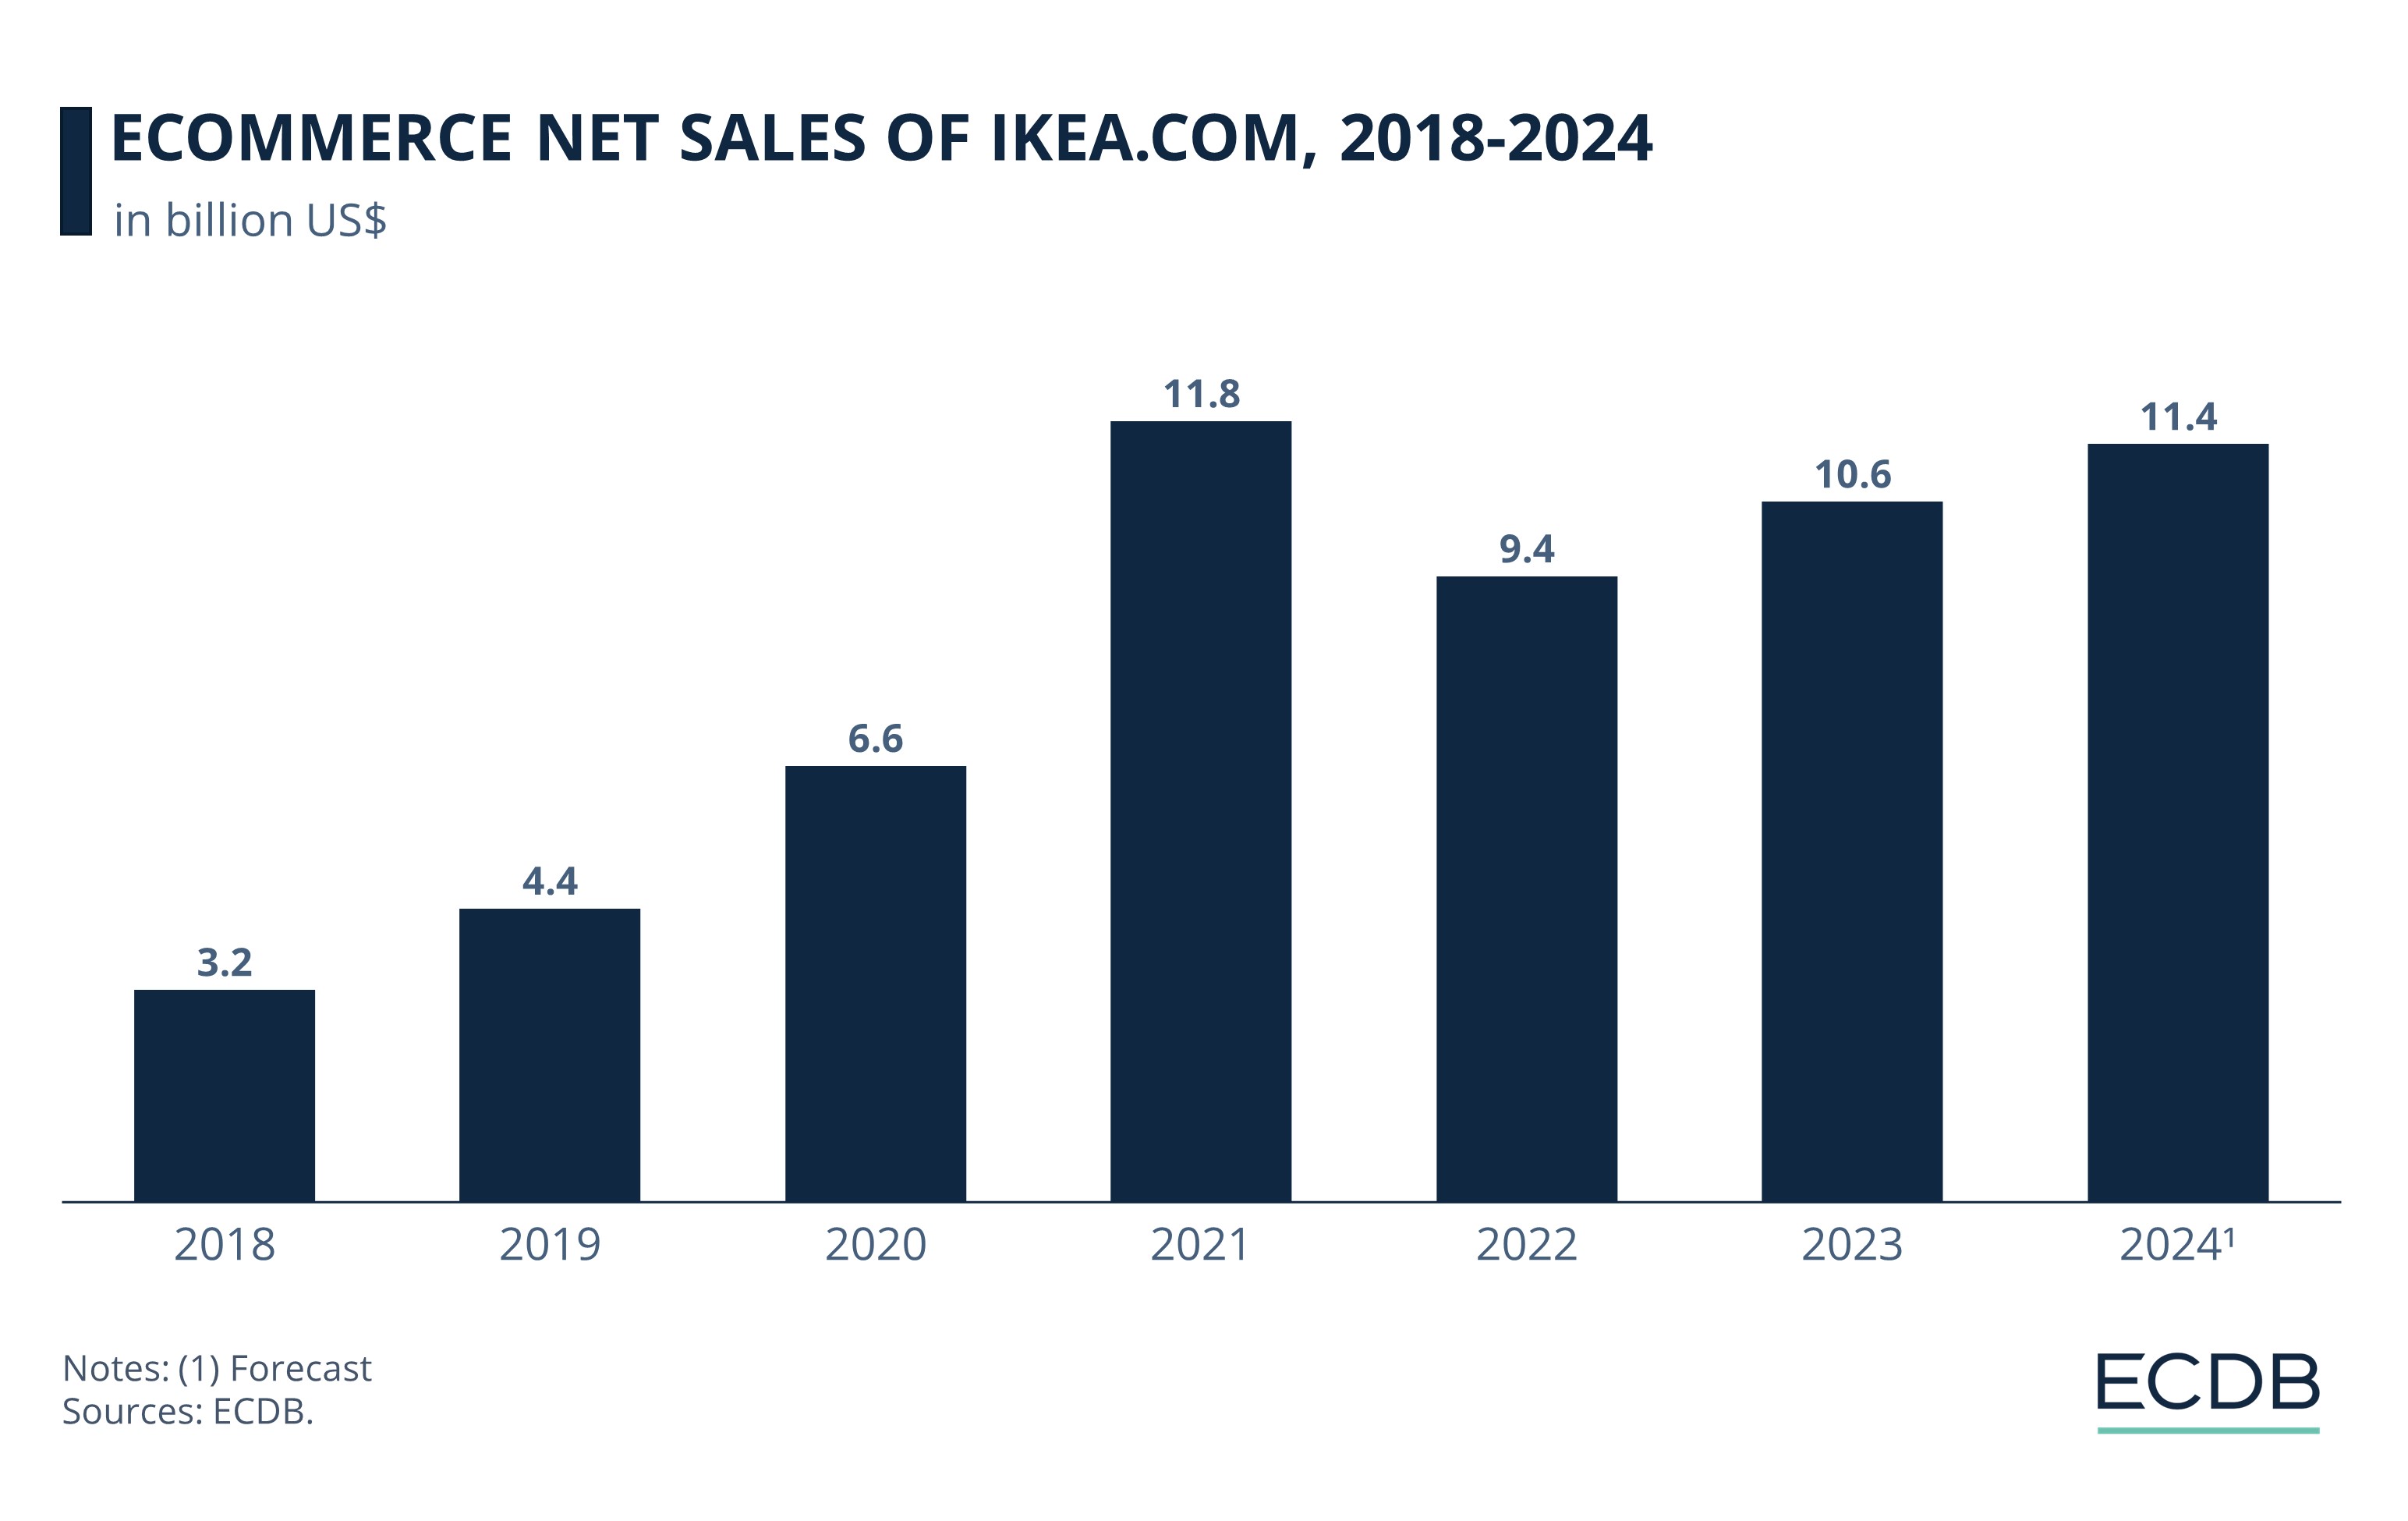 eCommerce Net Sales of Ikea.com, 2018-2024